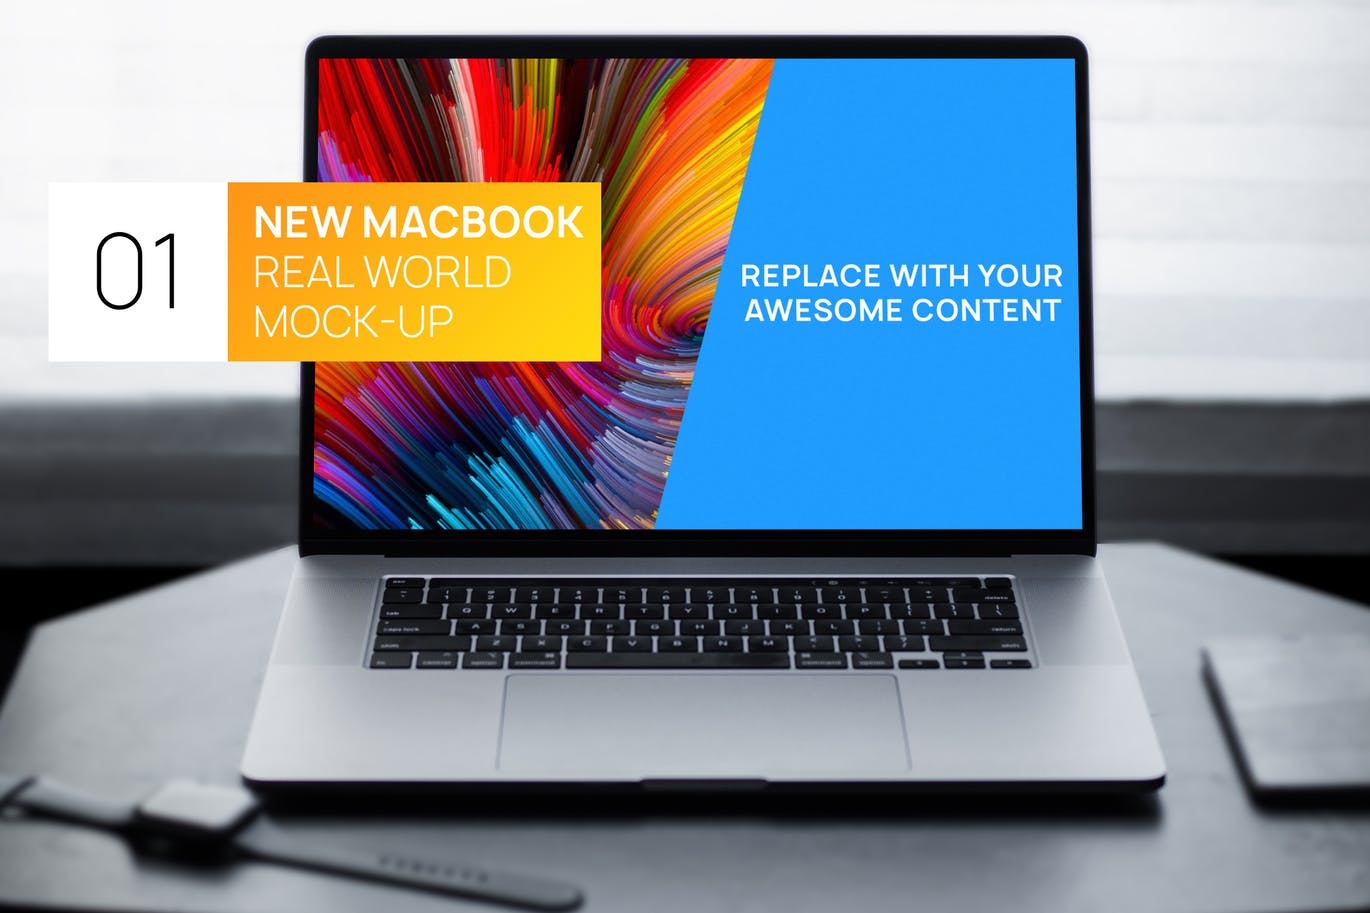 简约风格灰黑场景MacBook电脑屏幕演示第一素材精选样机 New MacBook Touchbar Dark Photo Real World Mock-up插图